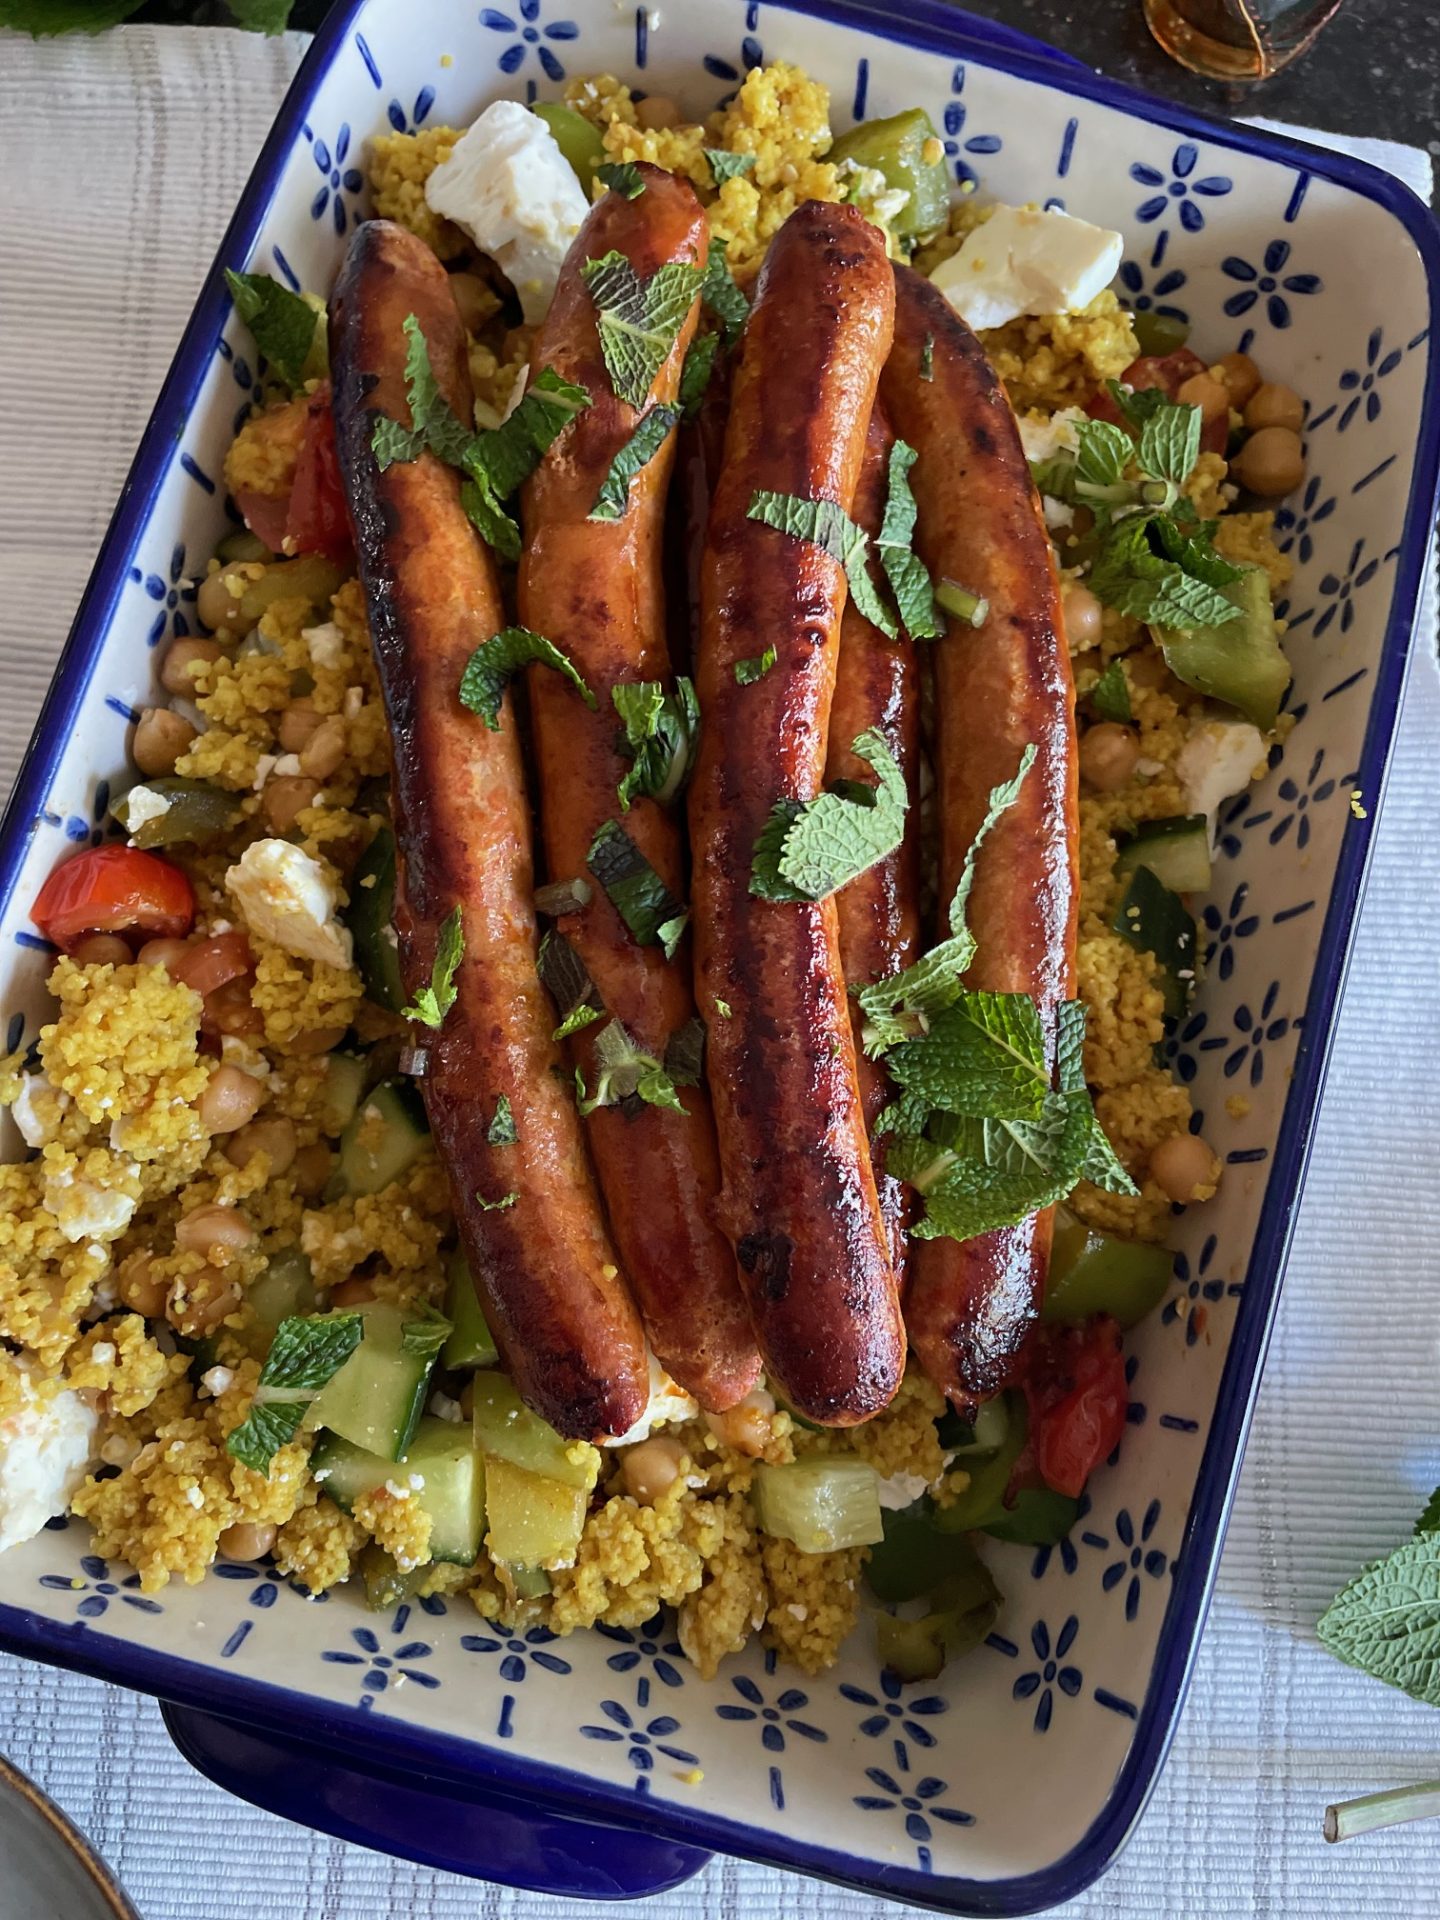 Couscous salade met merguez worstjes en geitenkaas - Ardeche inspiratie en tips - Foodblog Foodinista